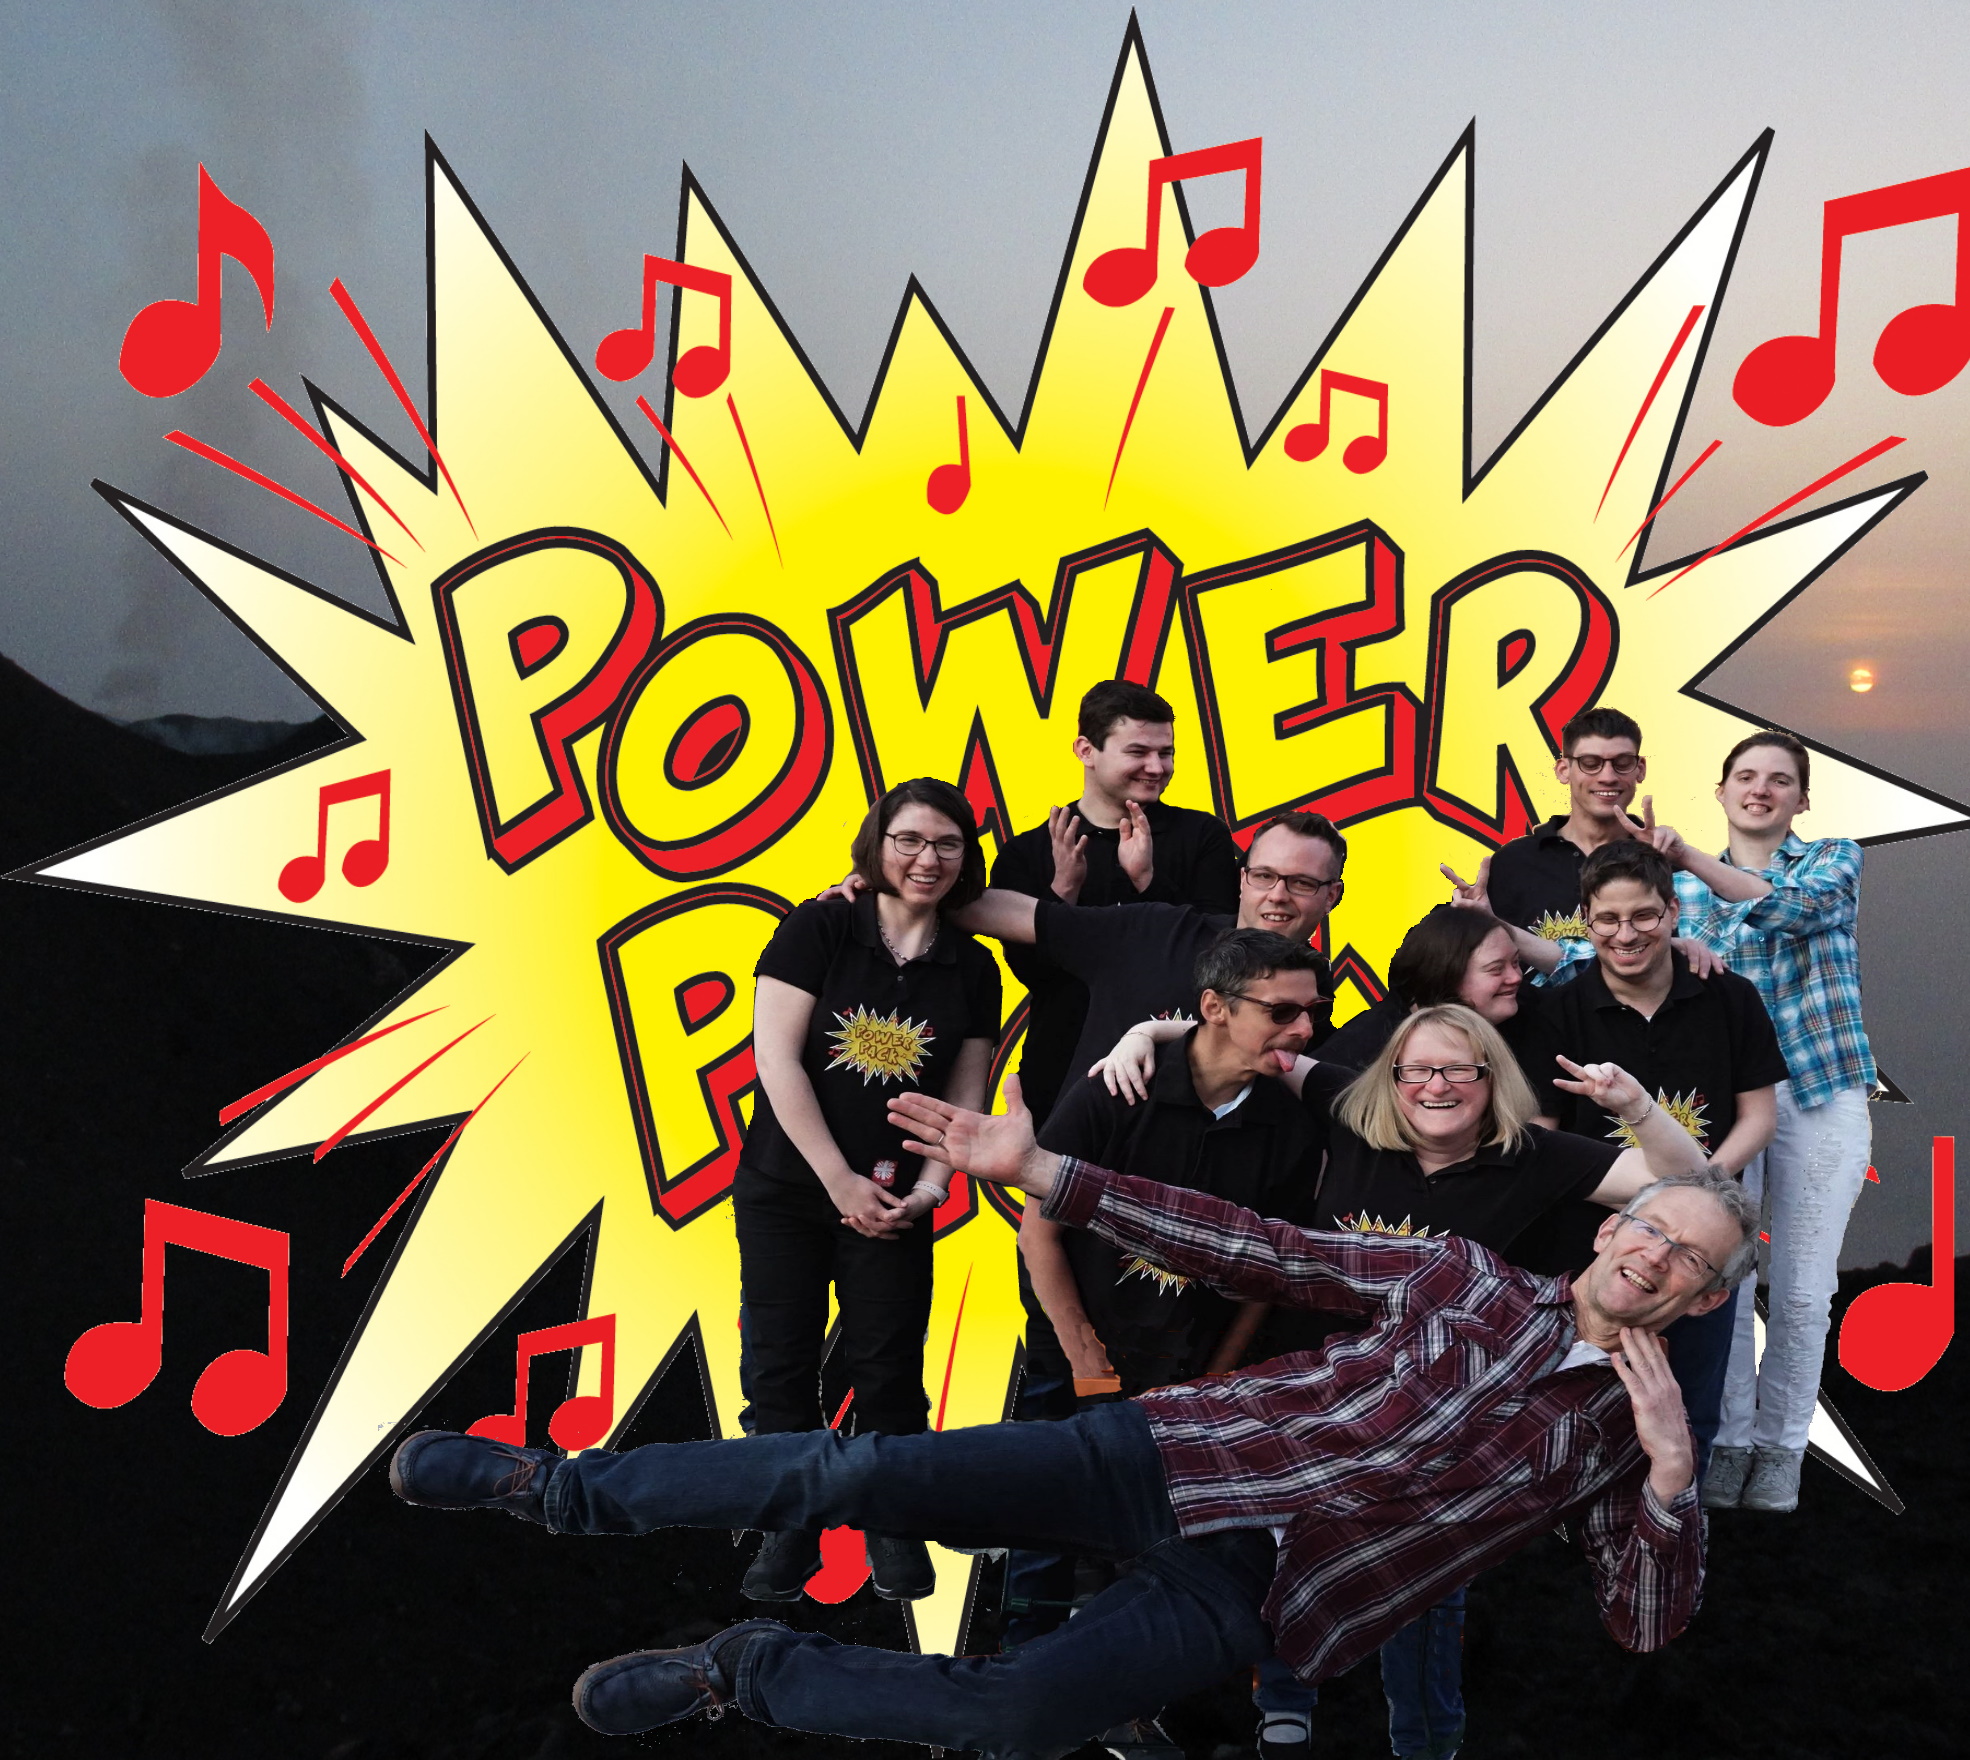 Gruppenfoto von 10 gut gelaunten Bandmitgliedern, dahinter groß das PowerPack Logo der Band